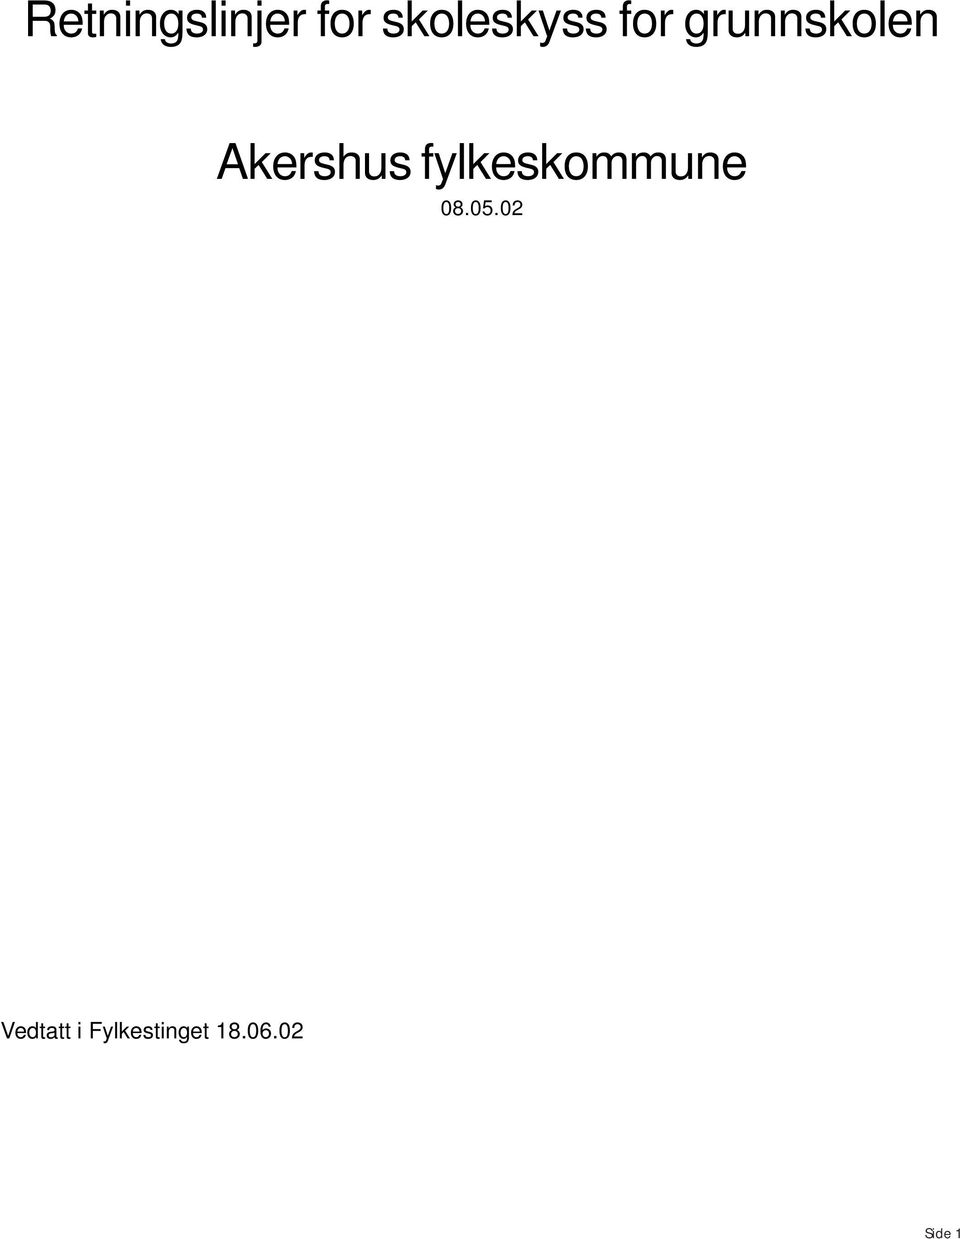 Akershus fylkeskommune 08.05.